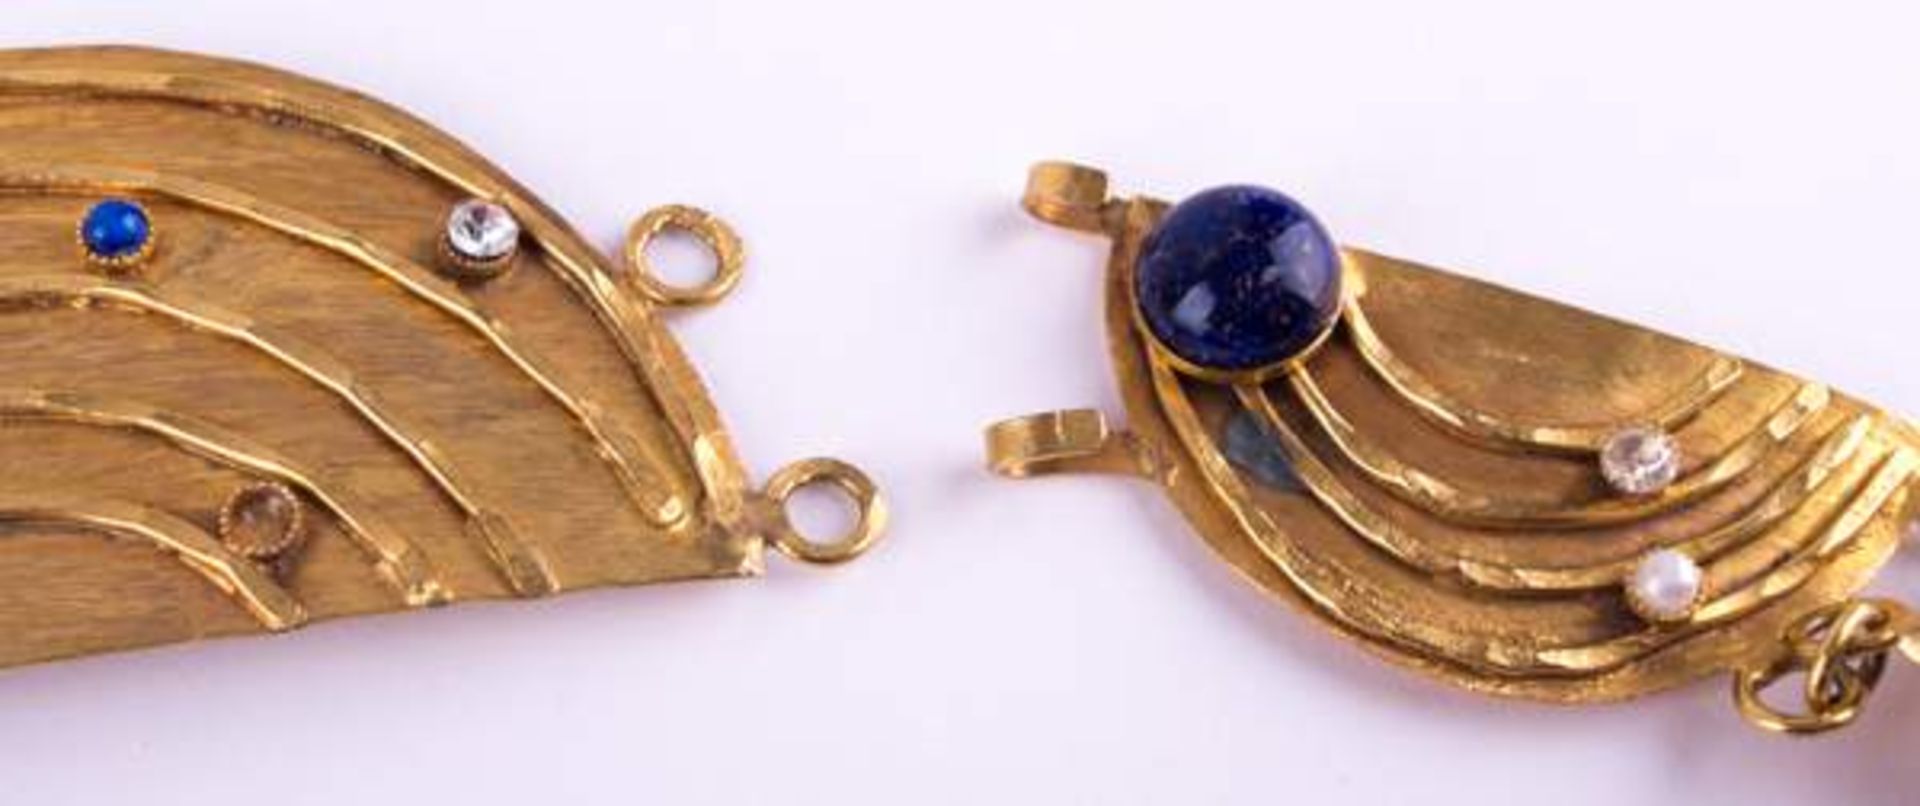 Schmuckgürtel Arabisch / Jewellery belt, Arabianmit verschiedenem Steinbesatz, Lapislazuli, echte - Bild 6 aus 6